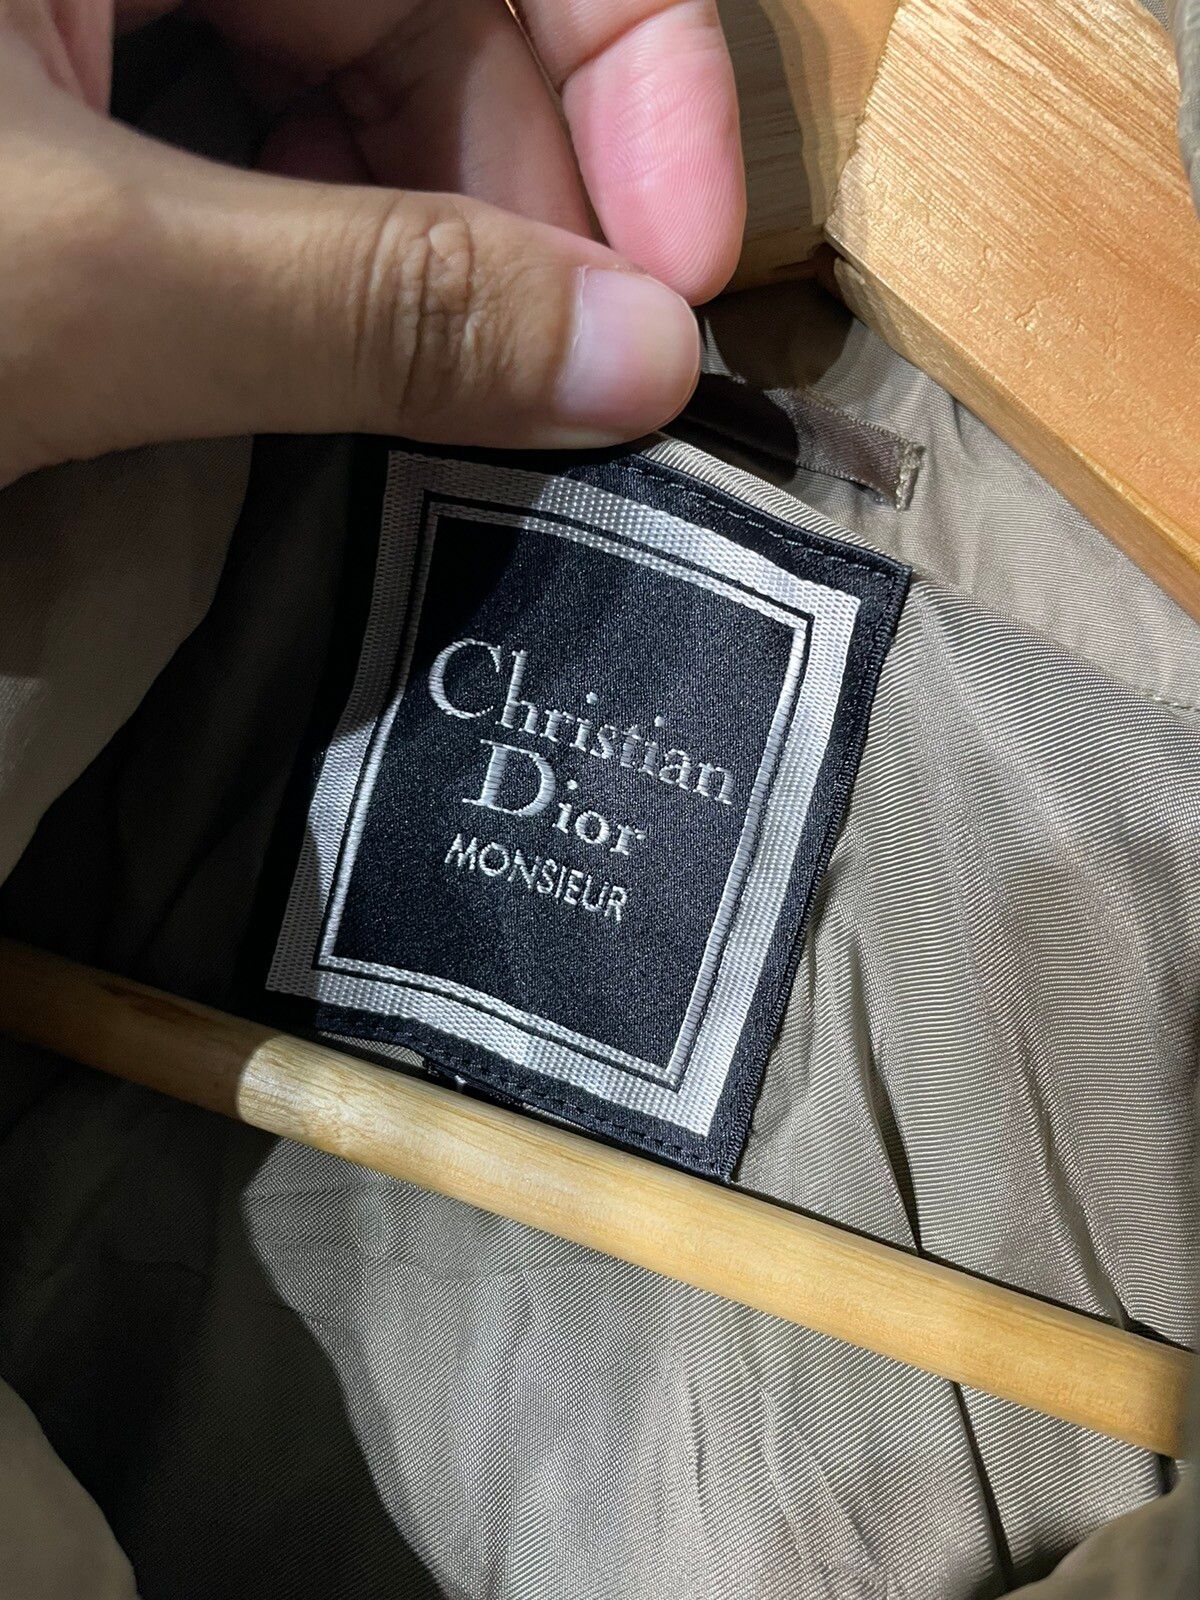 DELETE IN 24h‼️ Christian Dior Monsieur Parka jacket - 4